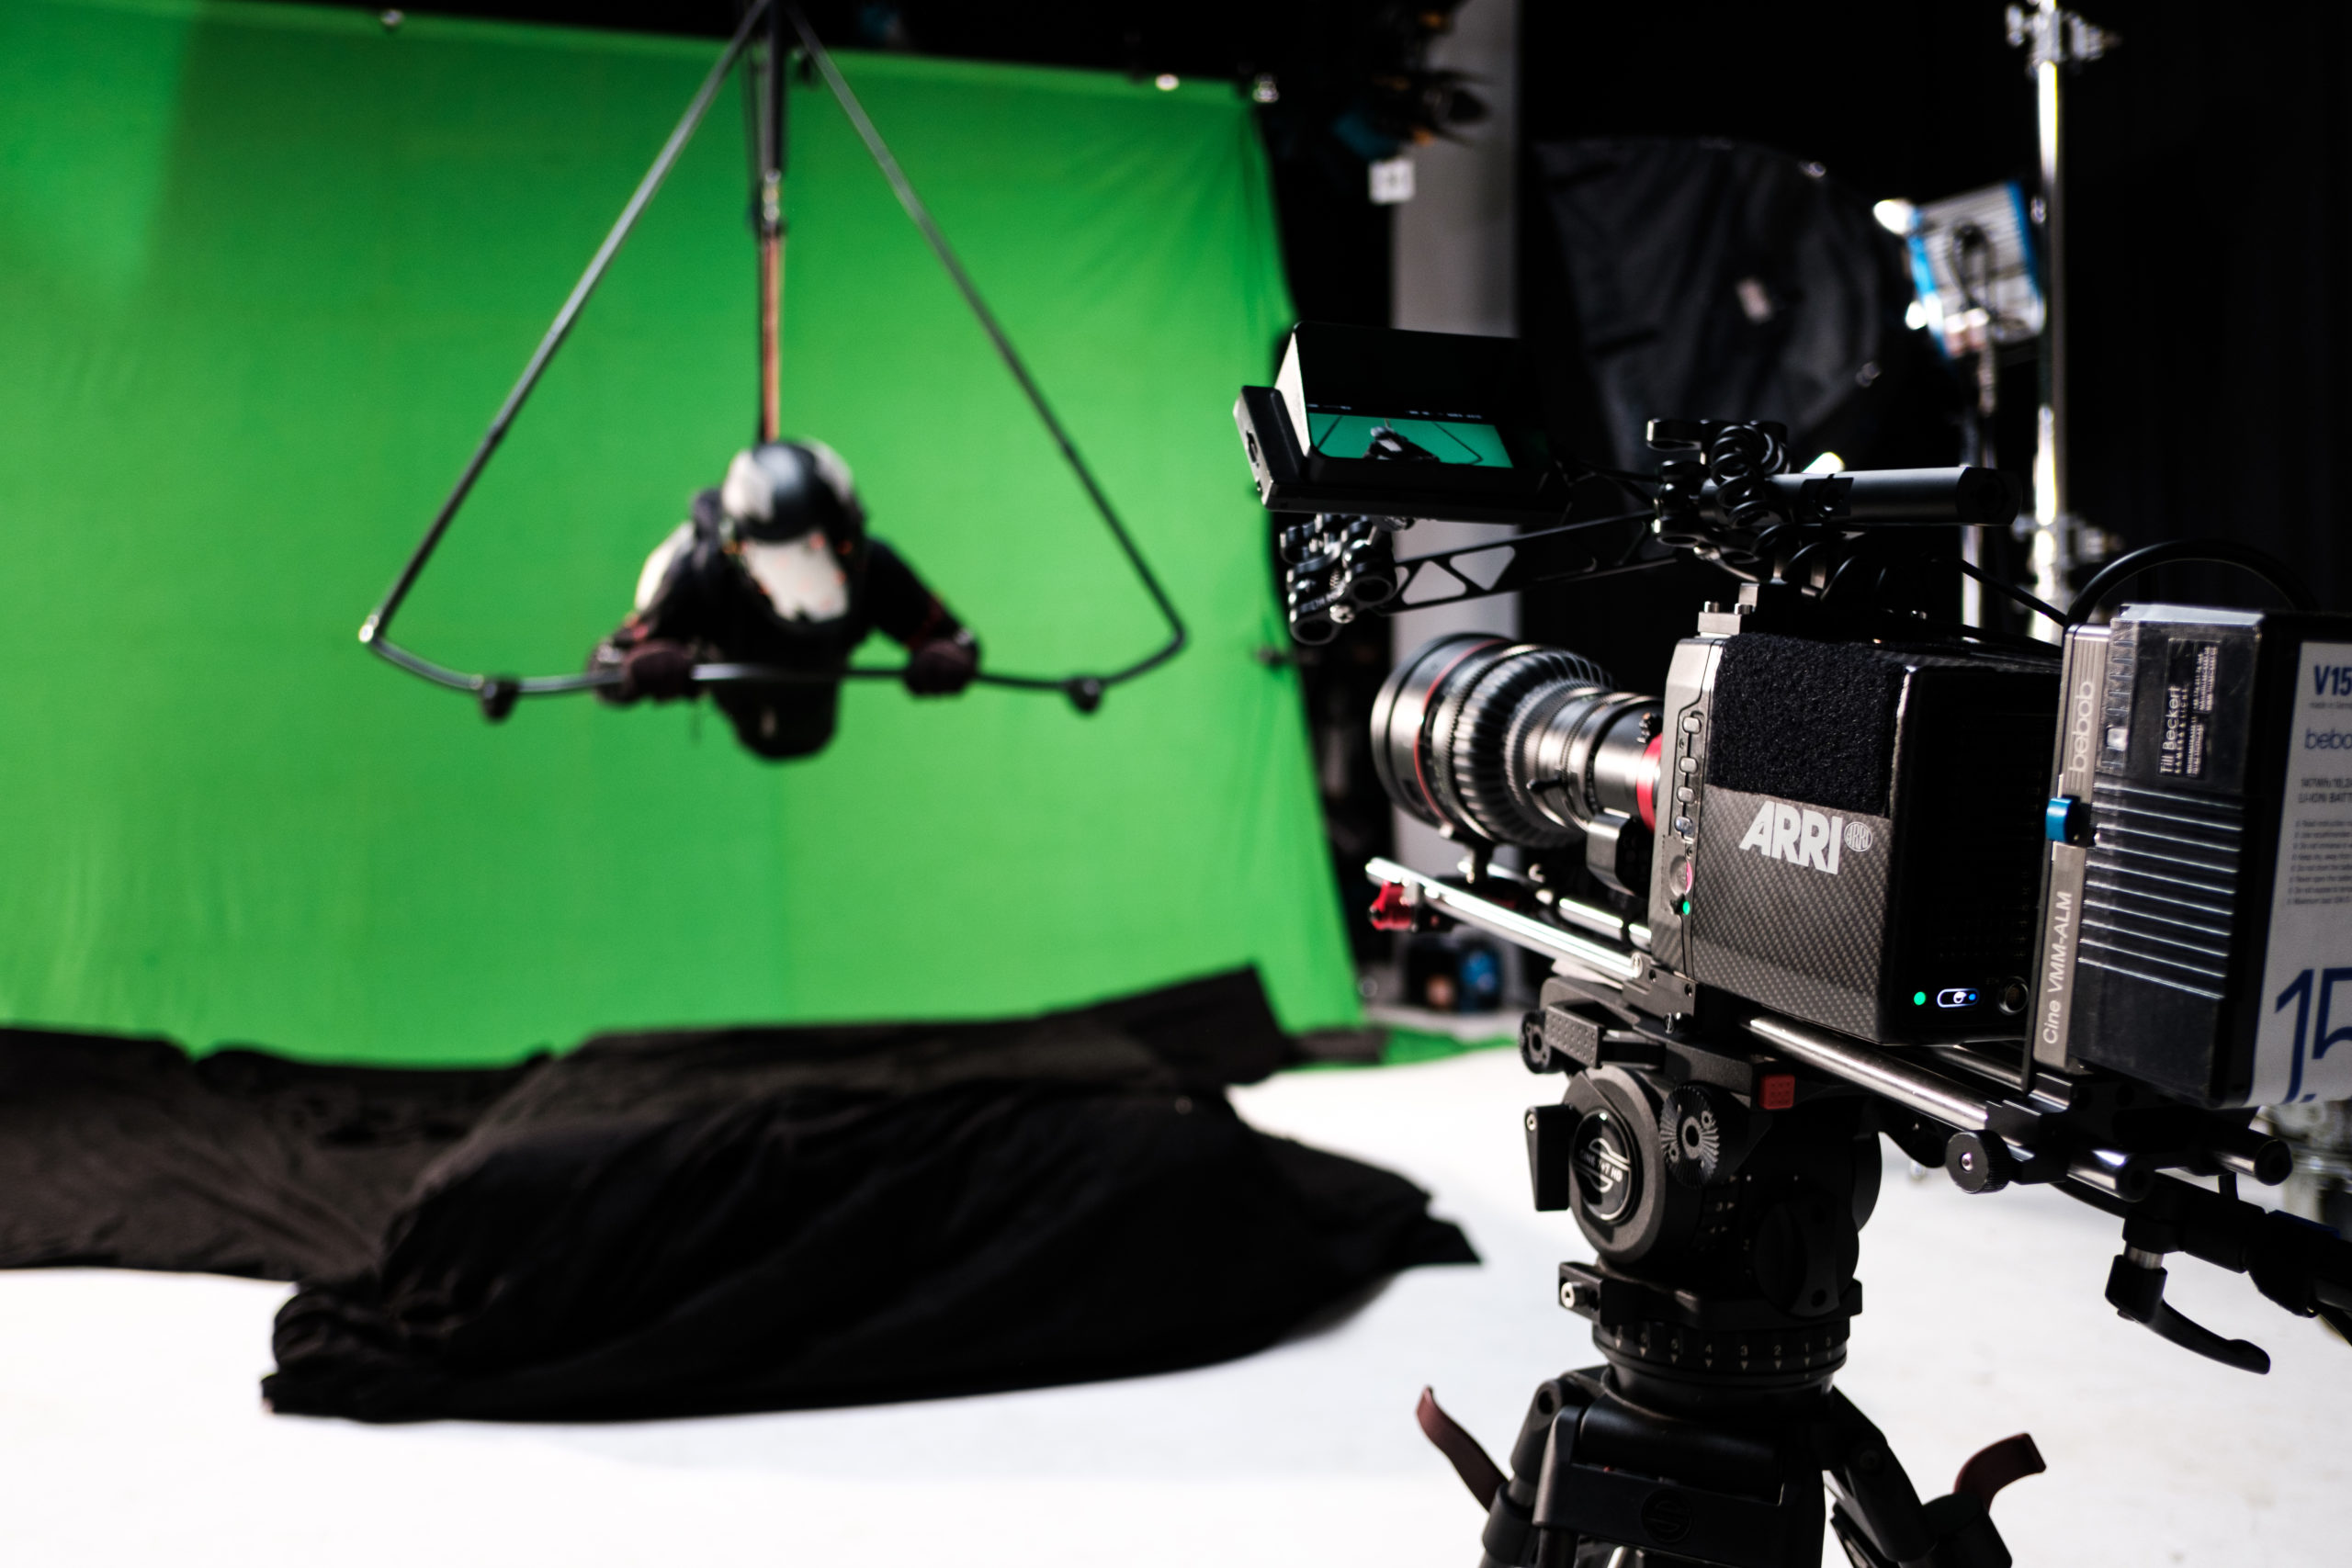 Ein Segelgleiter wird vor einem Greenscreen von einer Kamera gefilmt